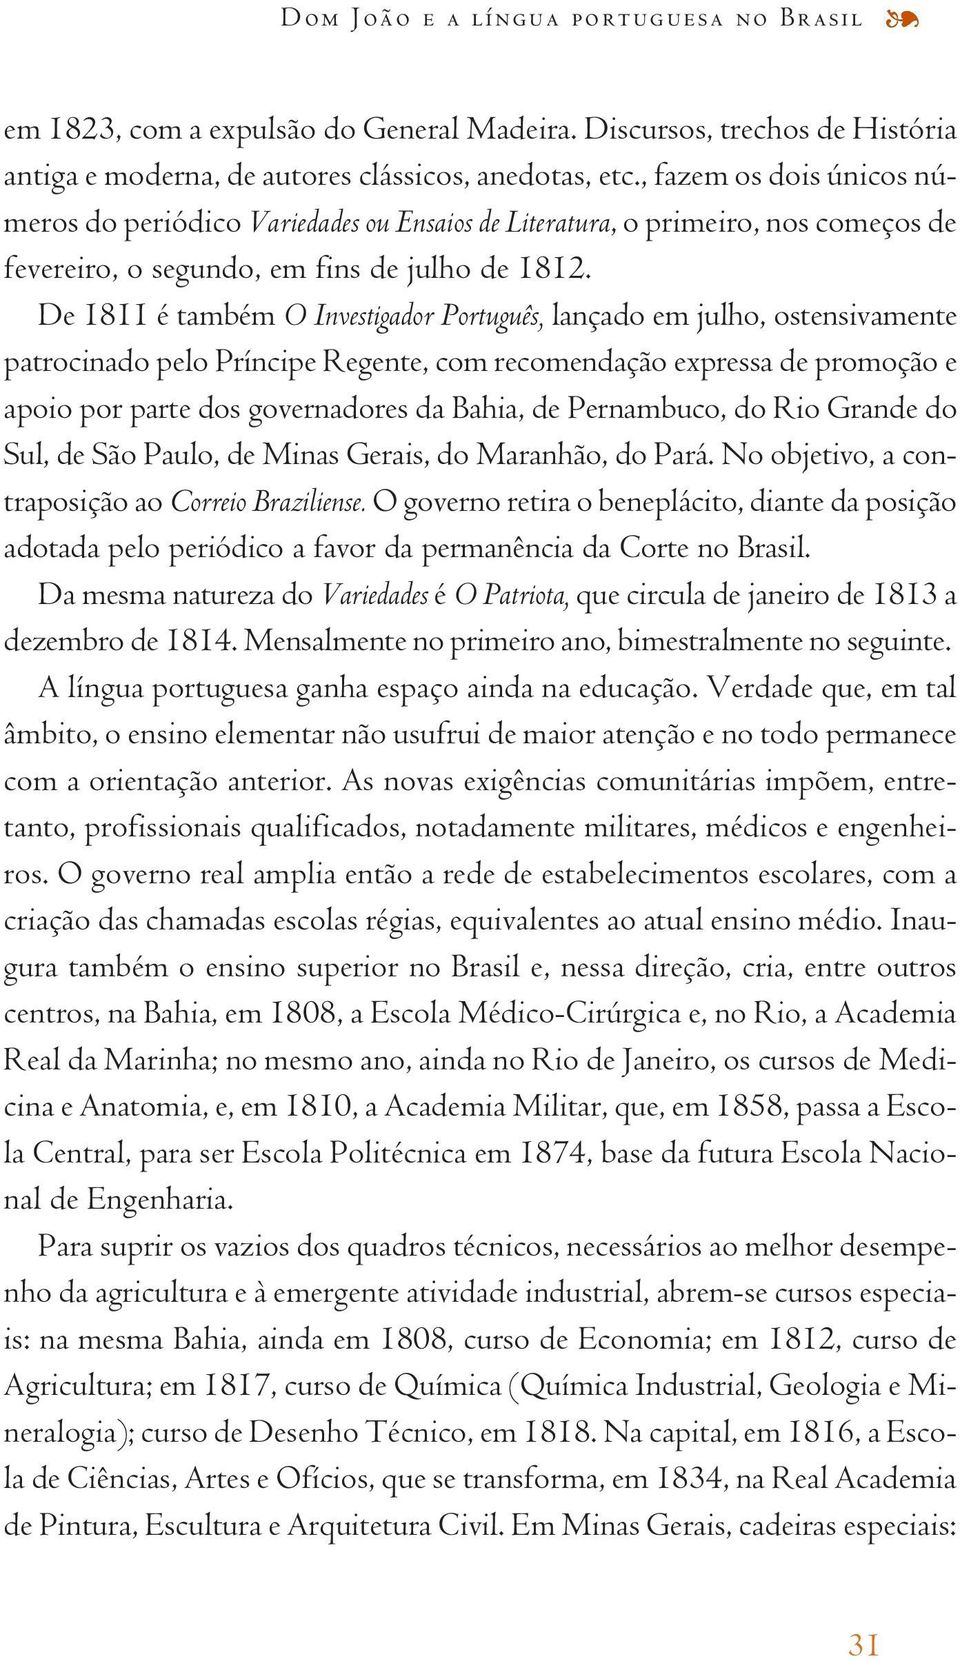 De 1811 é também O Investigador Português, lançado em julho, ostensivamente patrocinado pelo Príncipe Regente, com recomendação expressa de promoção e apoio por parte dos governadores da Bahia, de